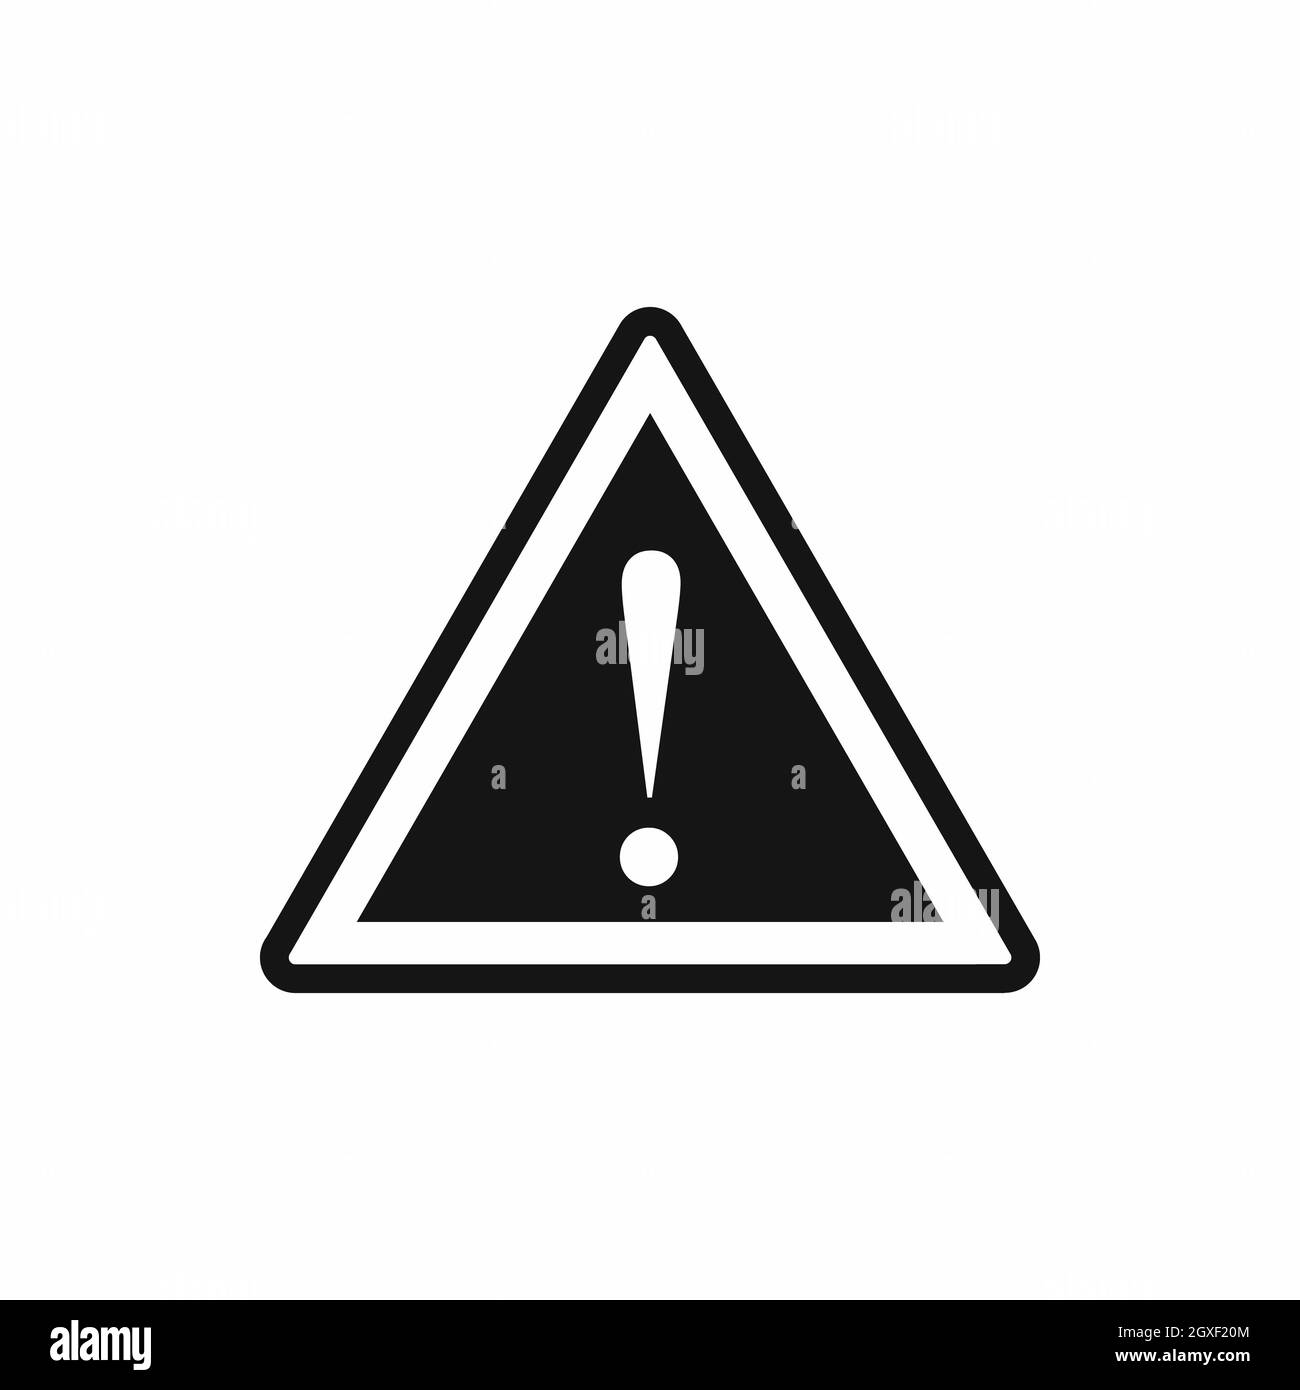 Warnblinker Warnhinweis mit Ausrufezeichen-Symbol in einfacher Ausführung, isoliert auf weißem Hintergrund Stockfoto